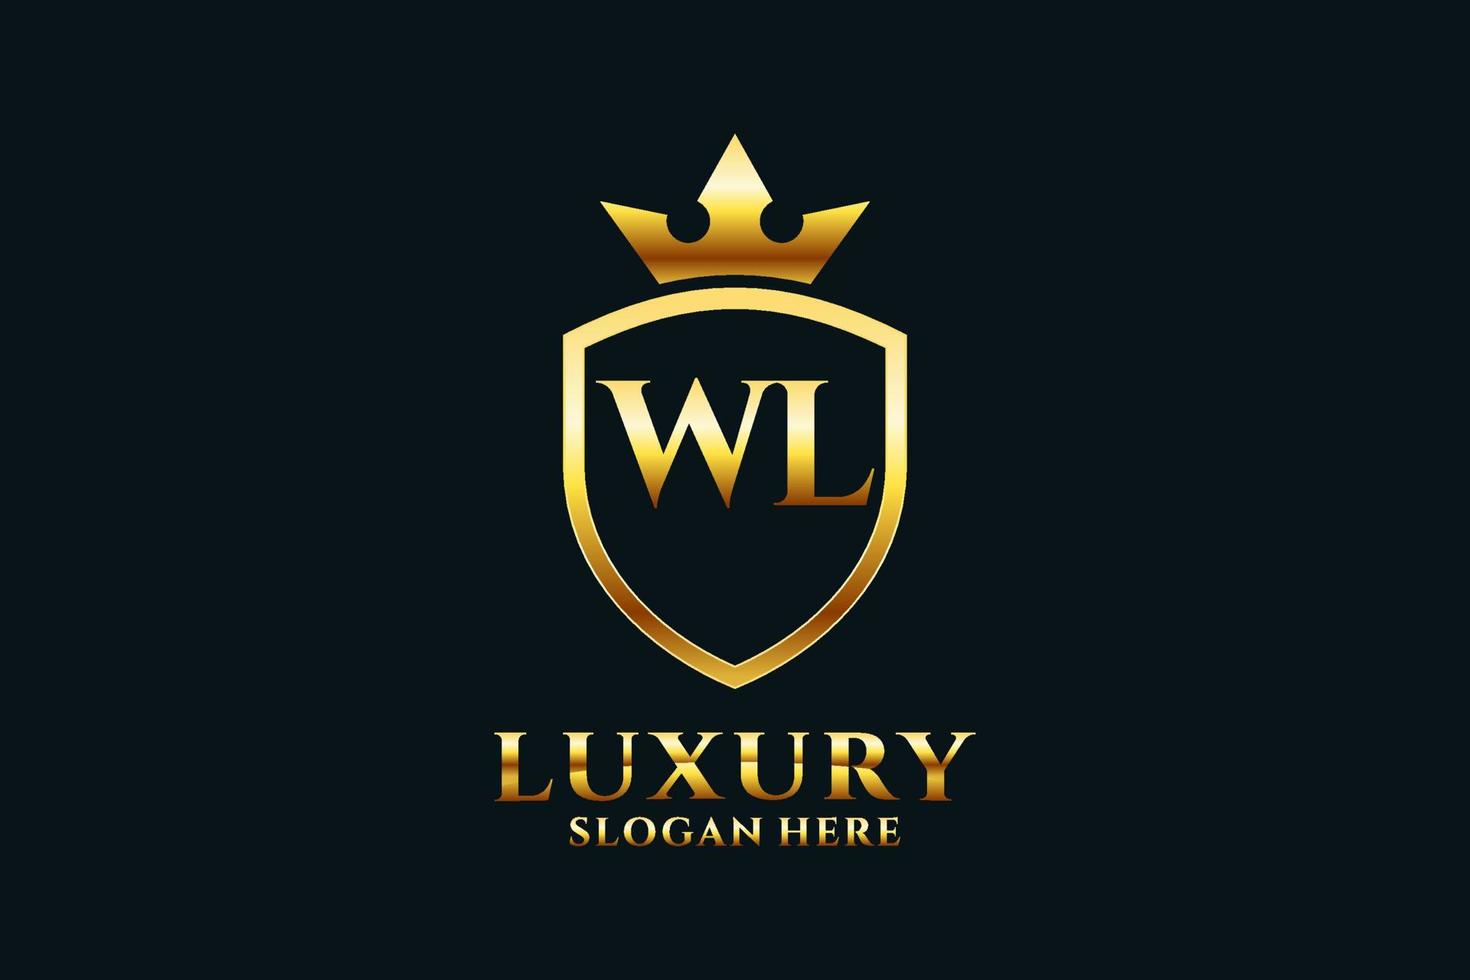 logotipo de monograma de lujo inicial wl elegante o plantilla de placa con pergaminos y corona real - perfecto para proyectos de marca de lujo vector